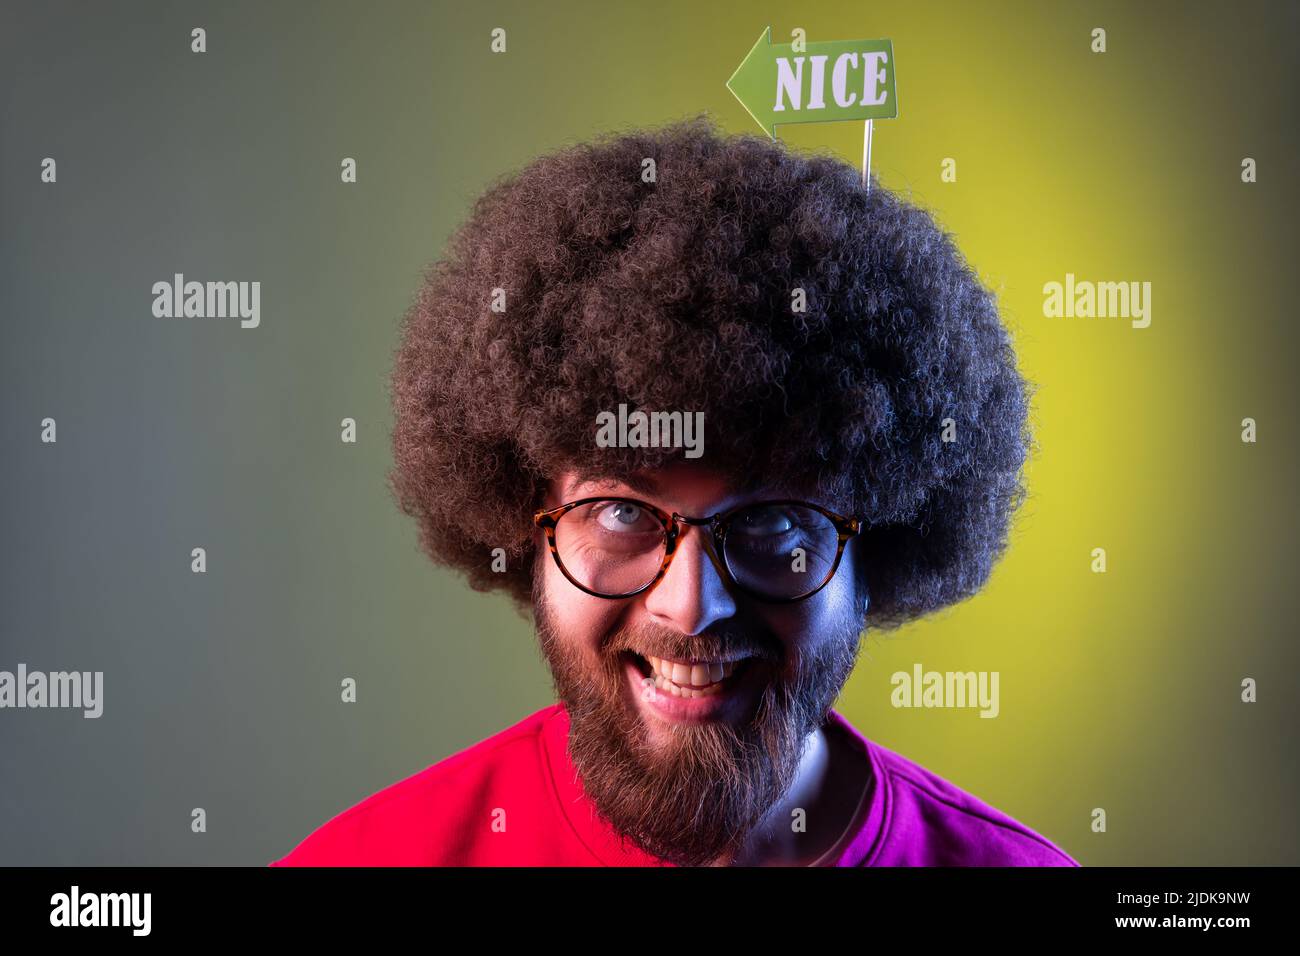 Porträt eines verrückten, glücklichen Hipster-Mannes mit Afro-Frisur, der seinen Urlaub feiert, festliche Stimmung hat und auf Party-Requisiten in seinen Haaren aufschaut. Innenaufnahmen im Studio, isoliert auf farbigem Neonlicht-Hintergrund. Stockfoto